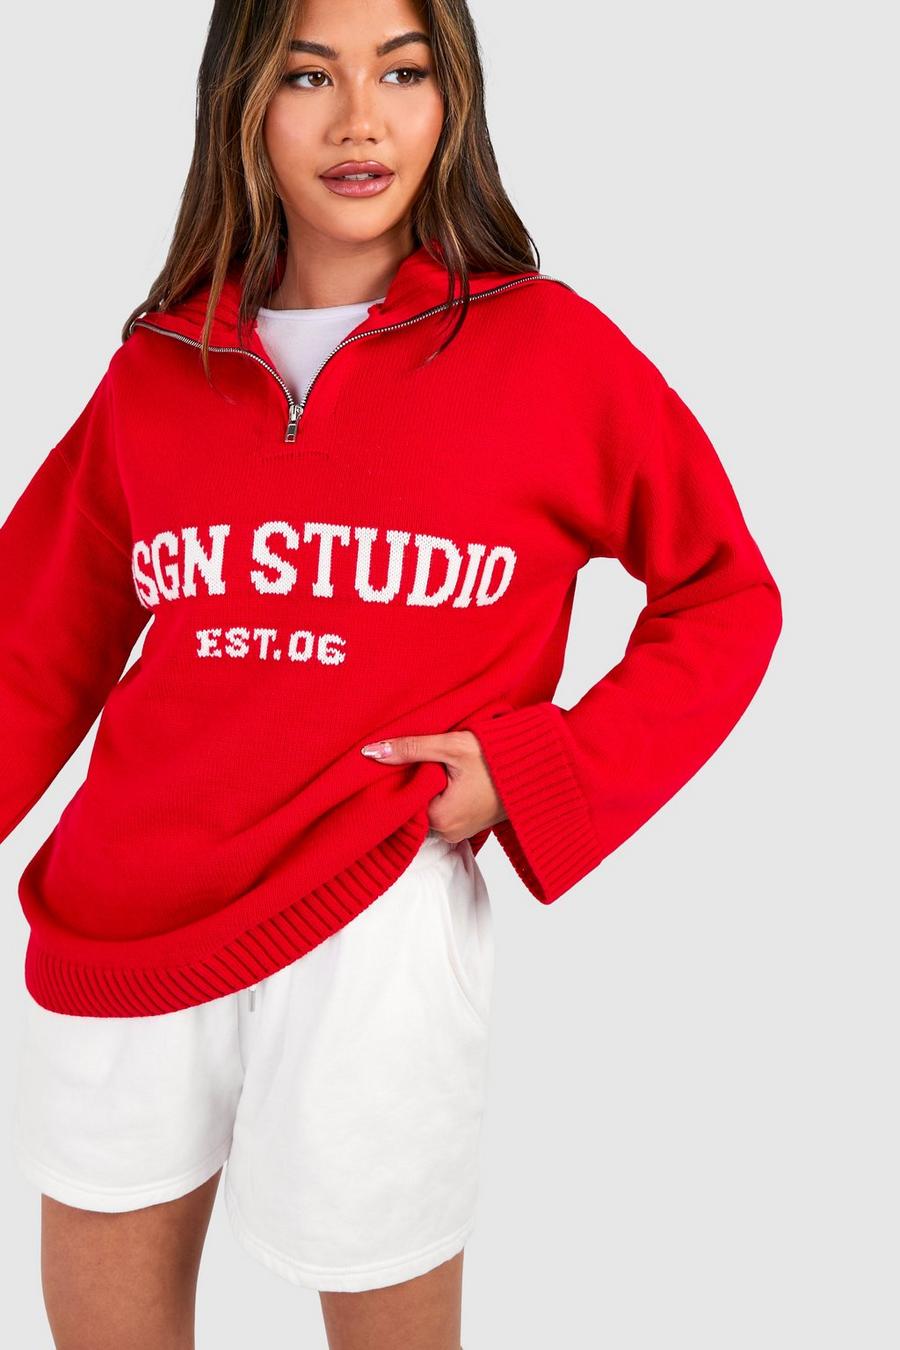 Dsgn Studio Oversize Pullover mit Reißverschluss, Red